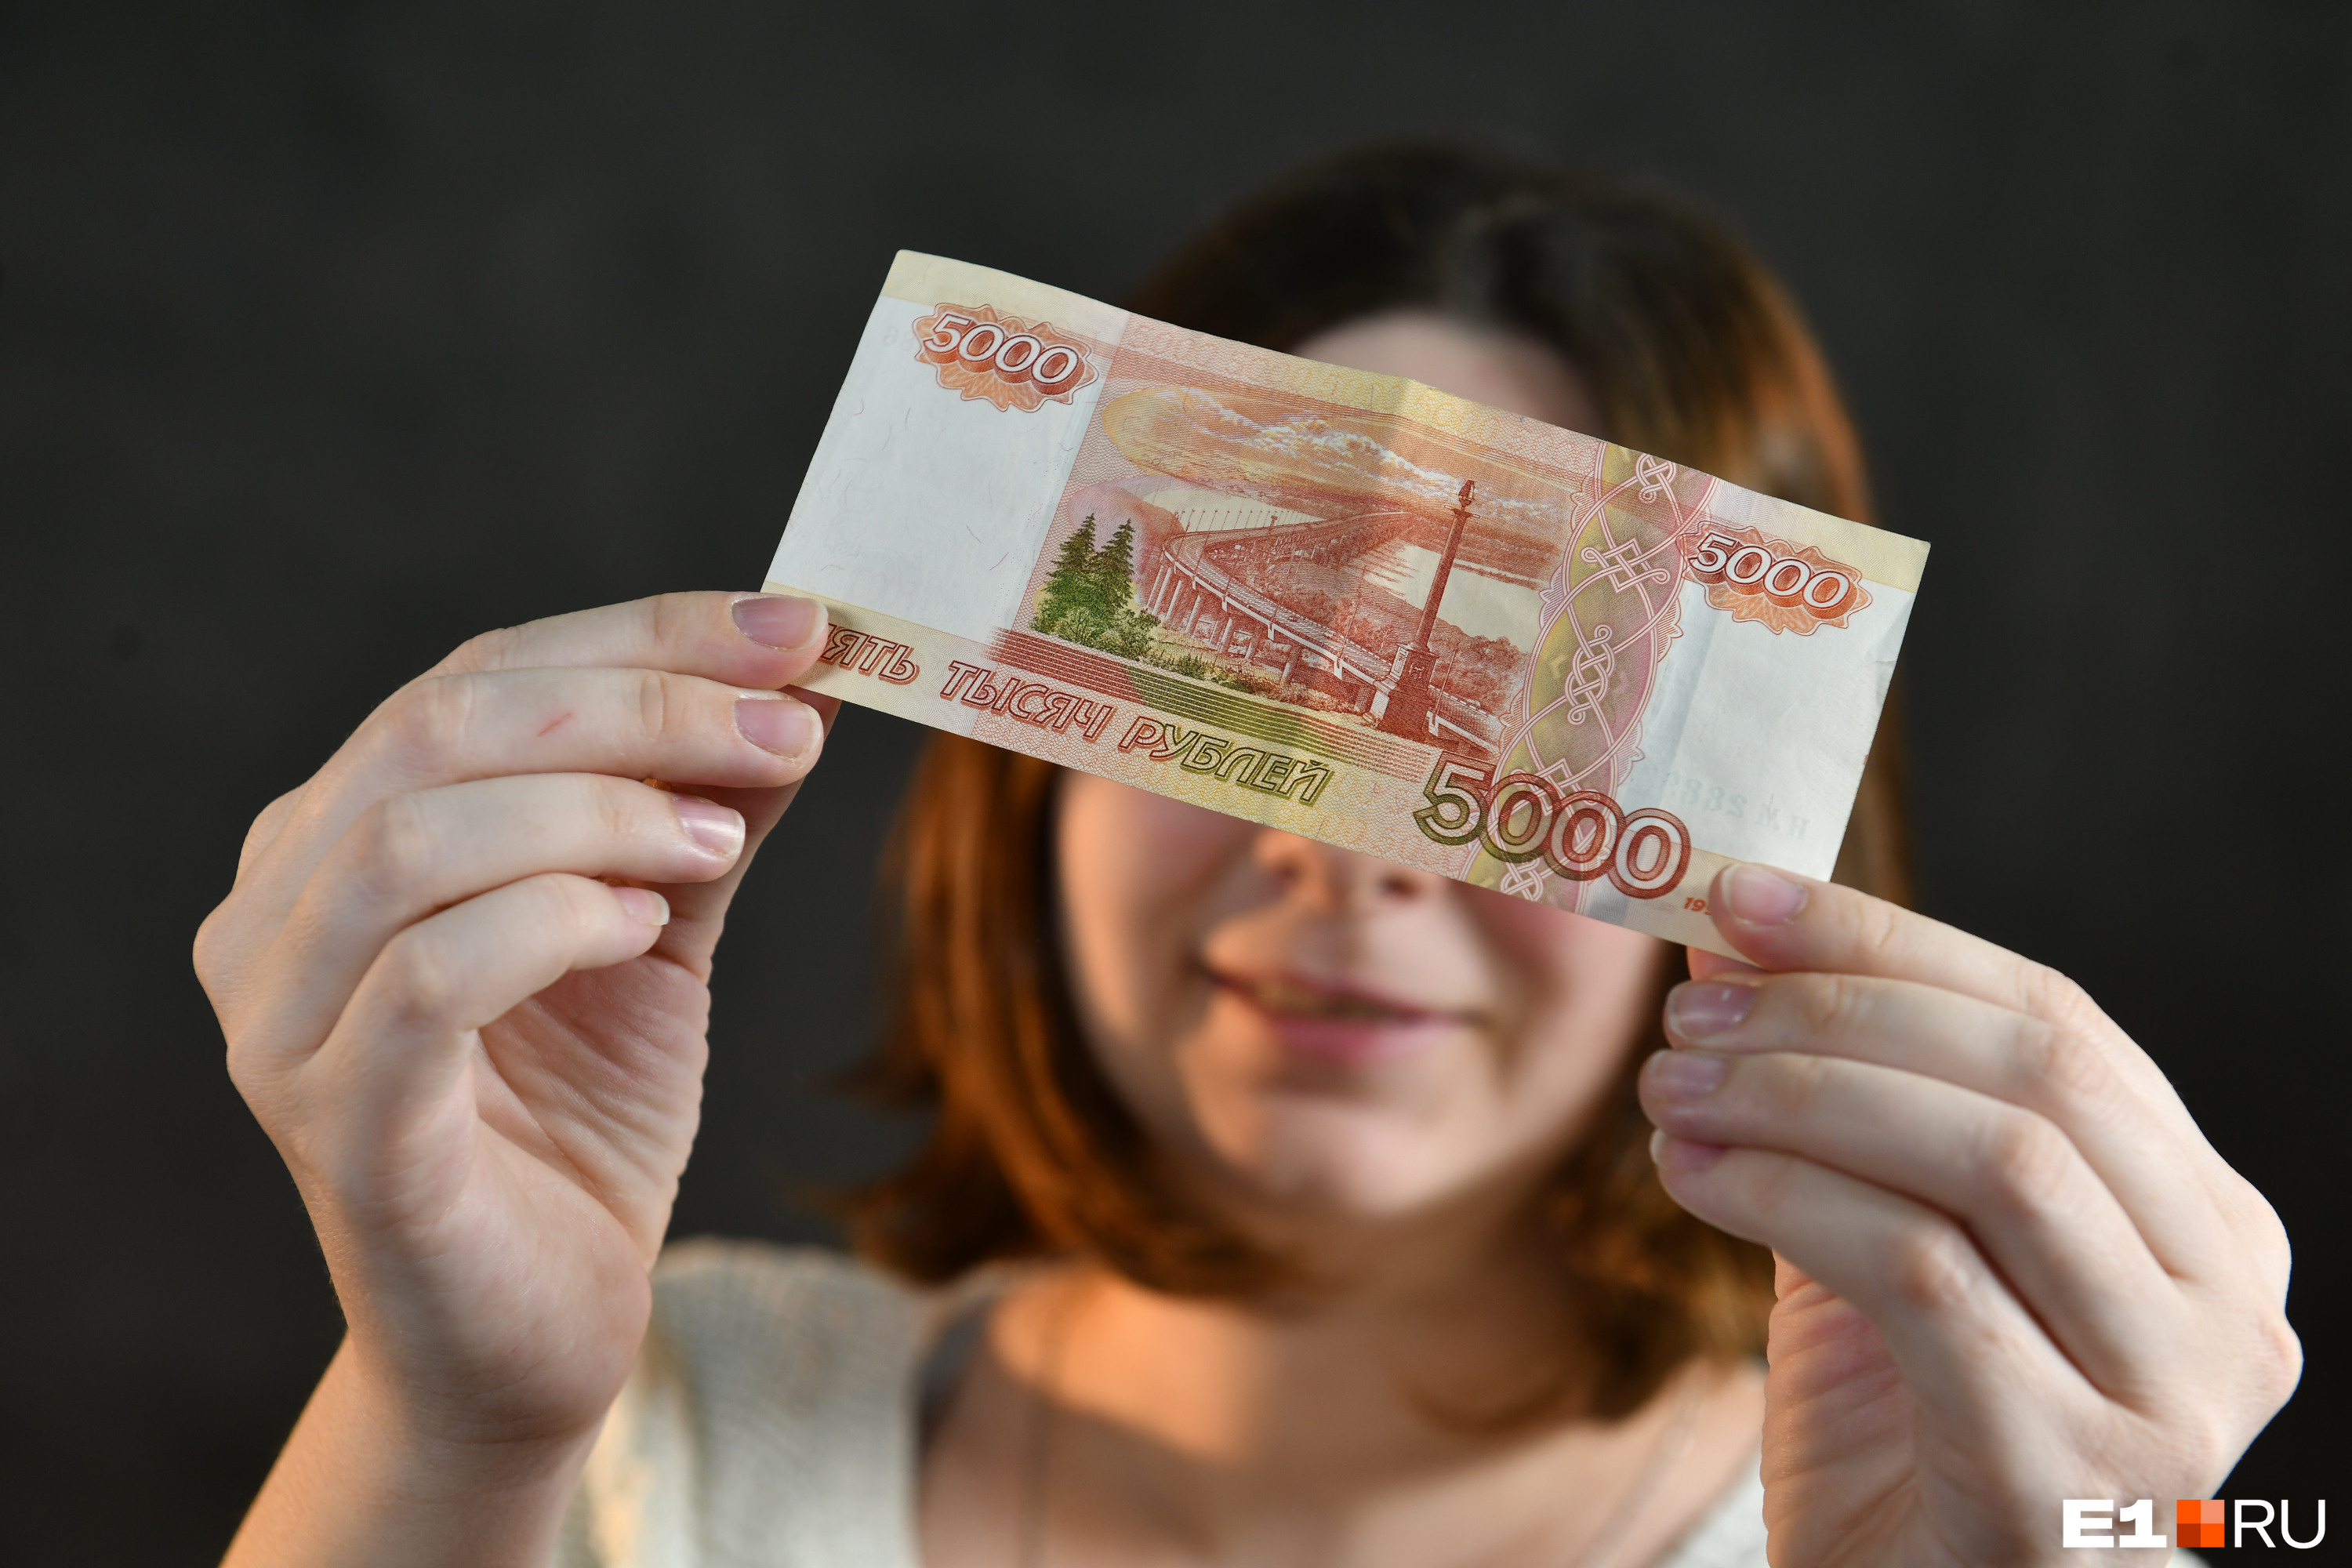 В Екатеринбурге объявились оригинальные мошенники. Они уговаривают нарушить закон за деньги